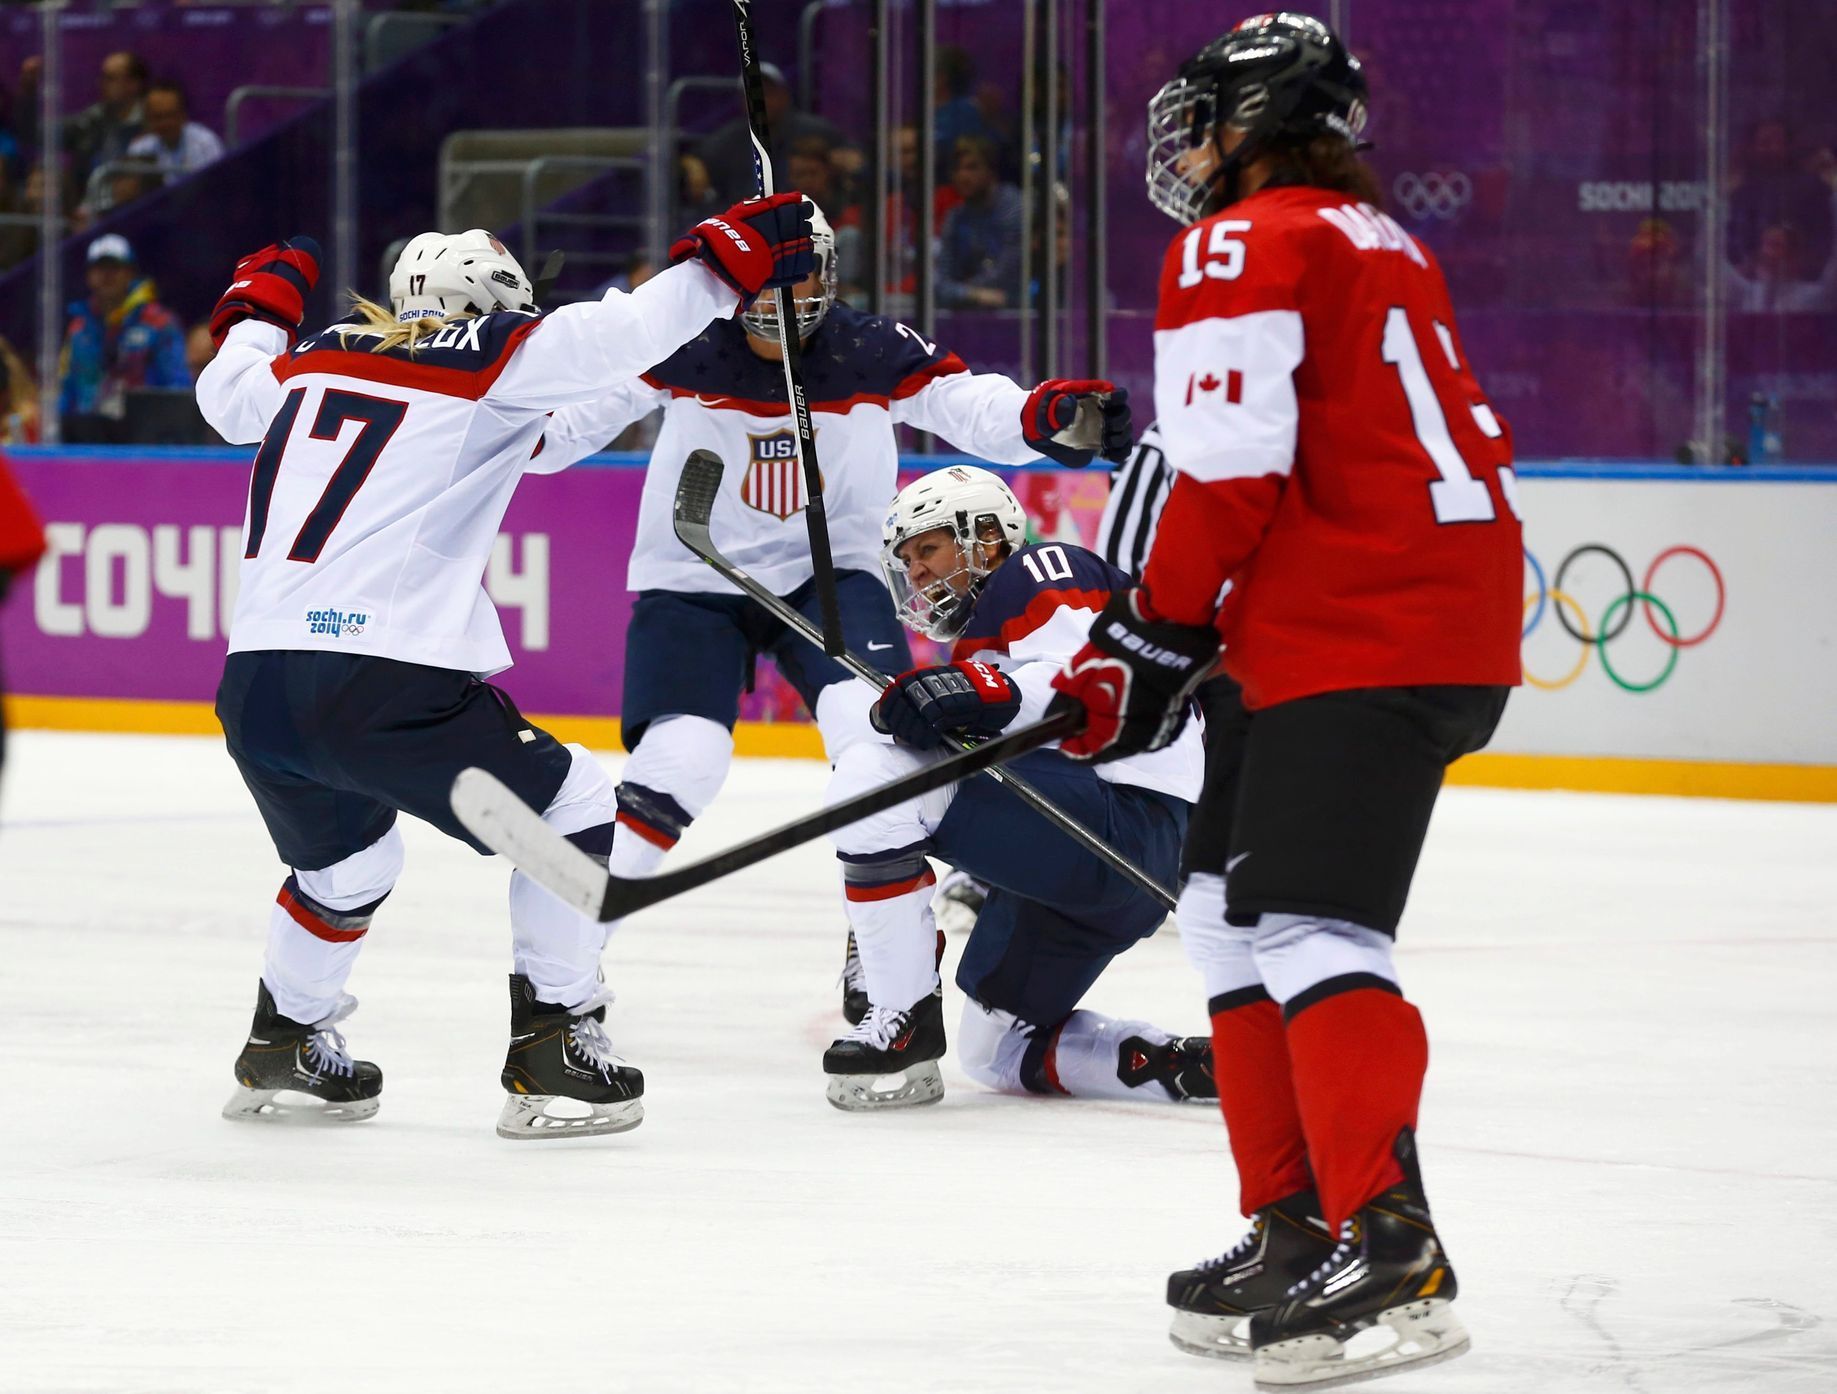 Soči 2014: Kanada - USA, Dugganová, Lamourexová, Bellamiová, Daoustová (hokej, ženy, finále)